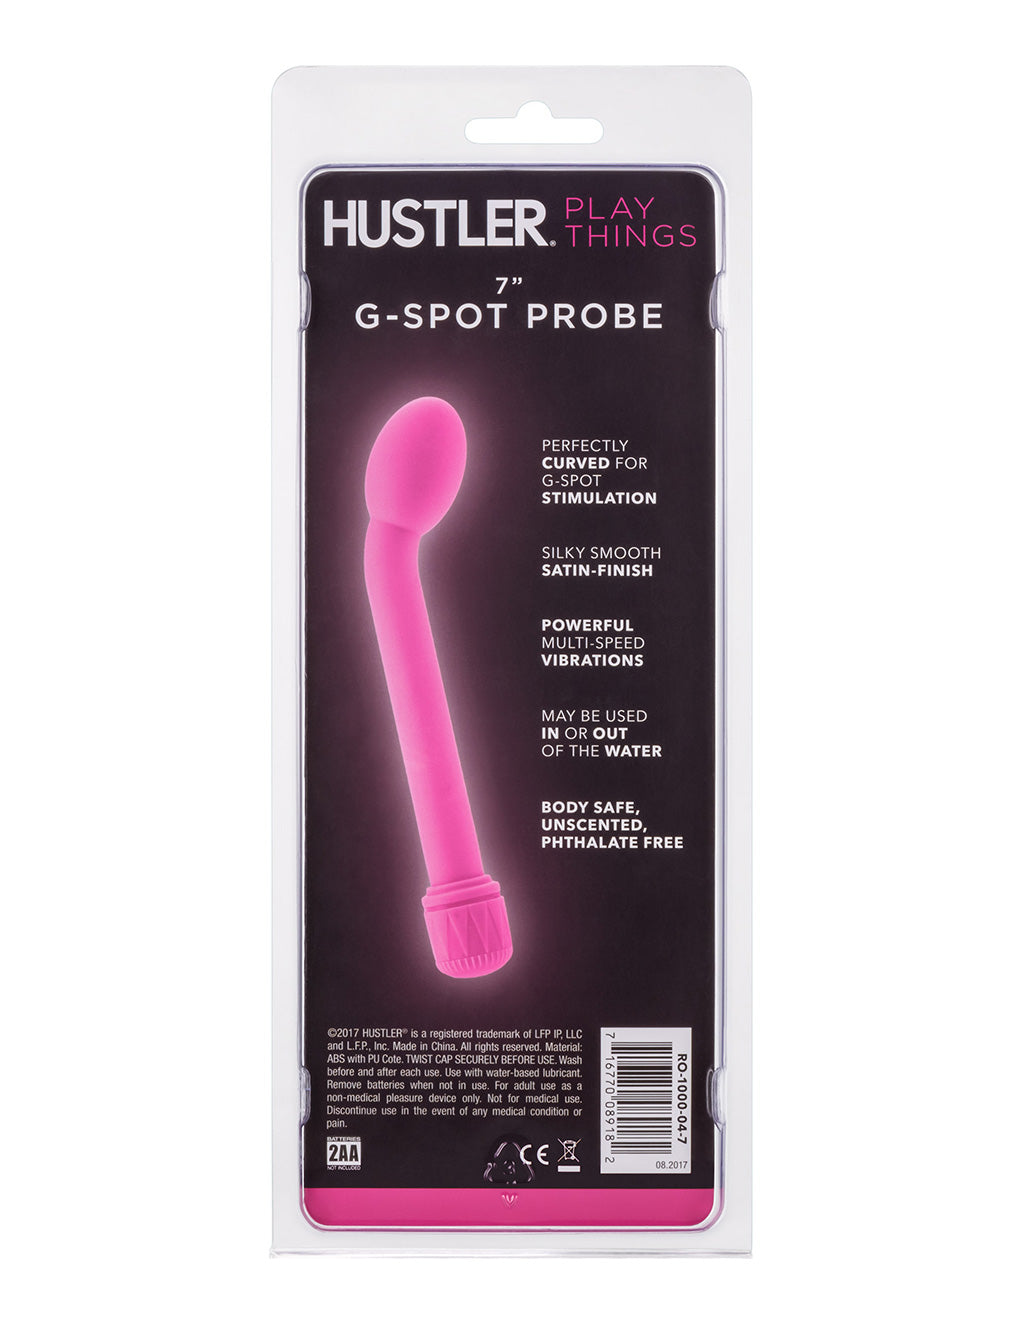 Hustler Playthings G-Spot Probe Vibrator - Novelties - back of package